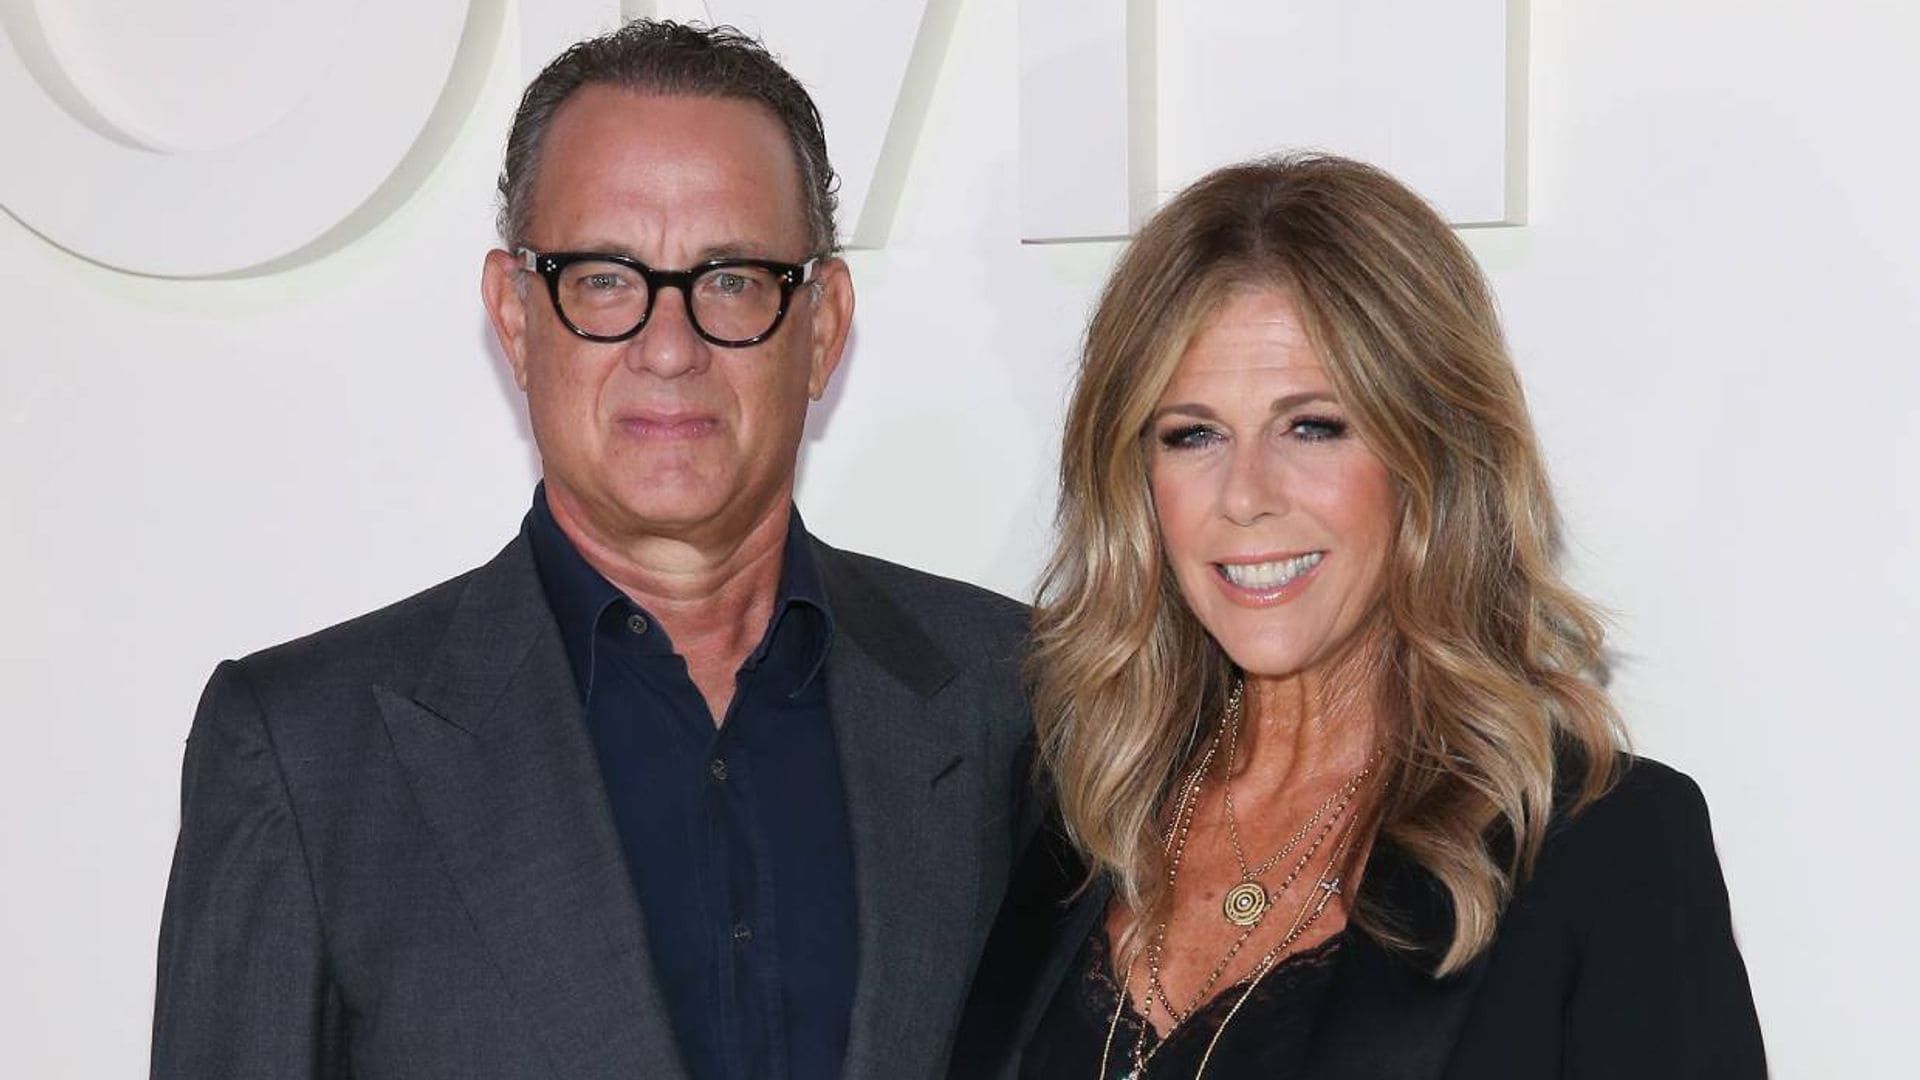 ¡Quarantunes! Tom Hanks y Rita Wilson ponen humor a su aislamiento con una divertida lista musical